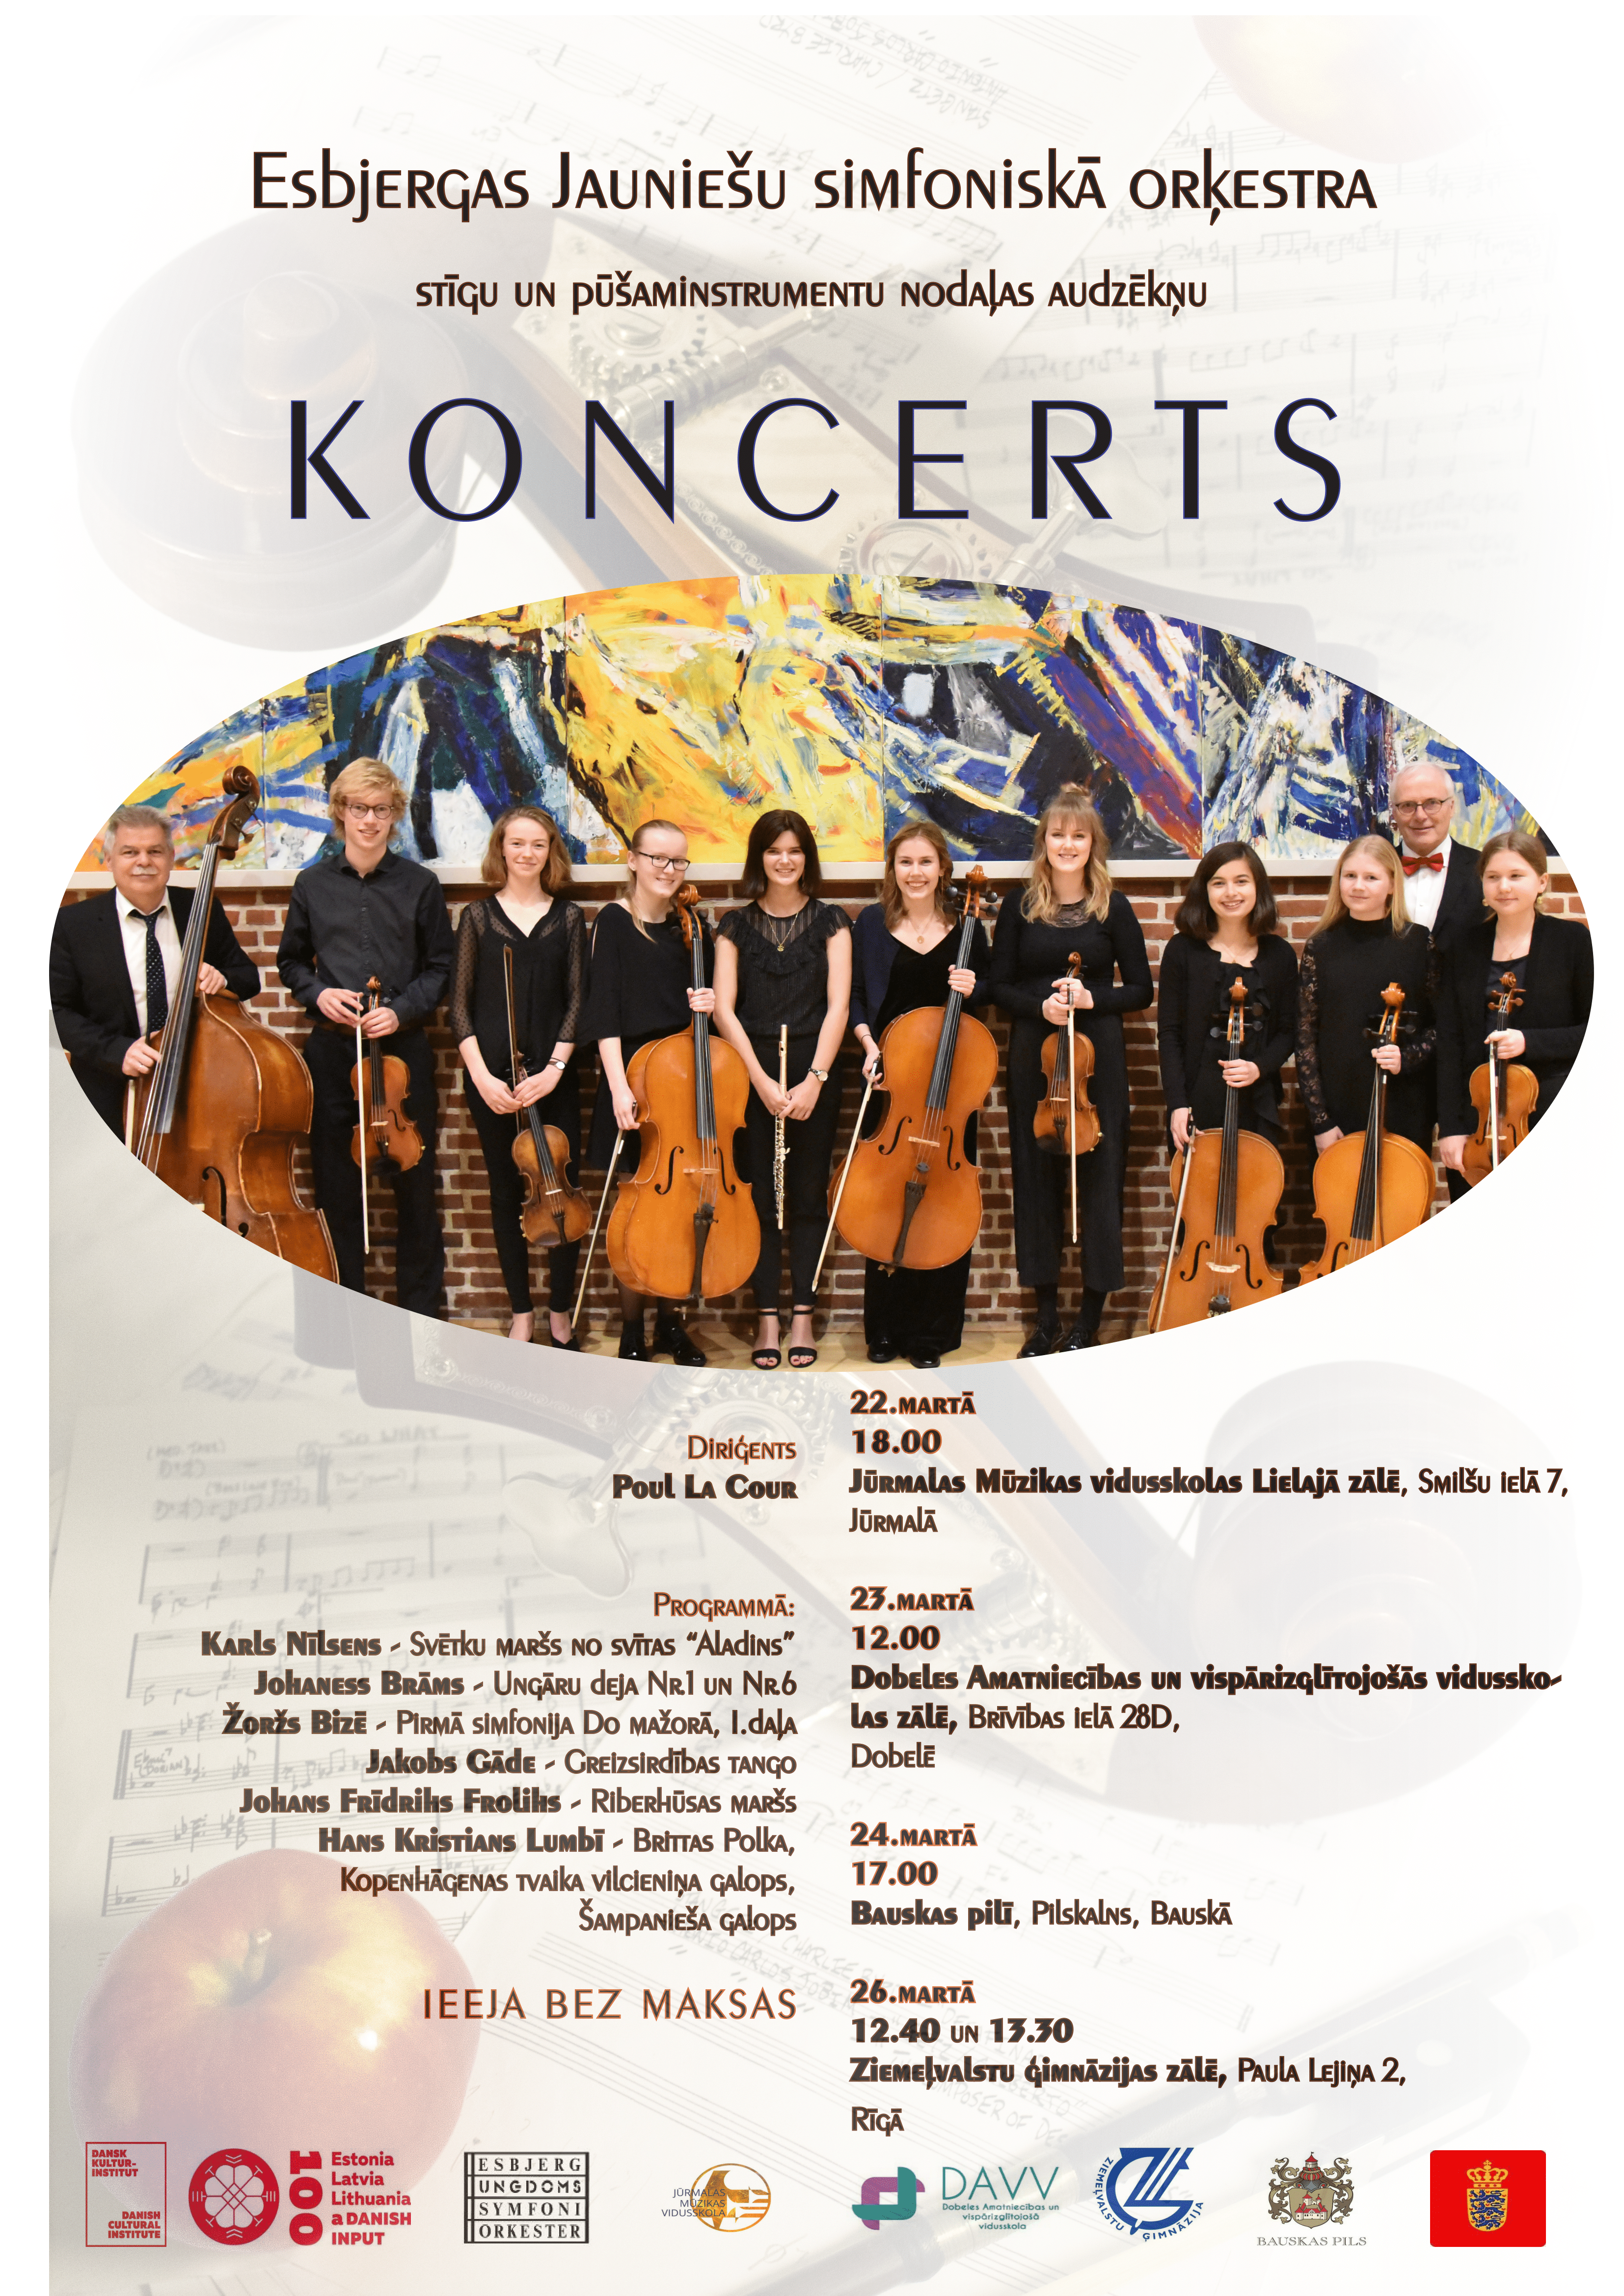 22. martā plkst. 18.00 Jūrmalas Mūzikas vidusskolā viesosies Esbjergas jauniešu simfoniskā orķestra kamersastāvs, lai kopā ar Jūrmalas Mūzikas vidusskolas Stīgu orķestri sniegtu koncertu.